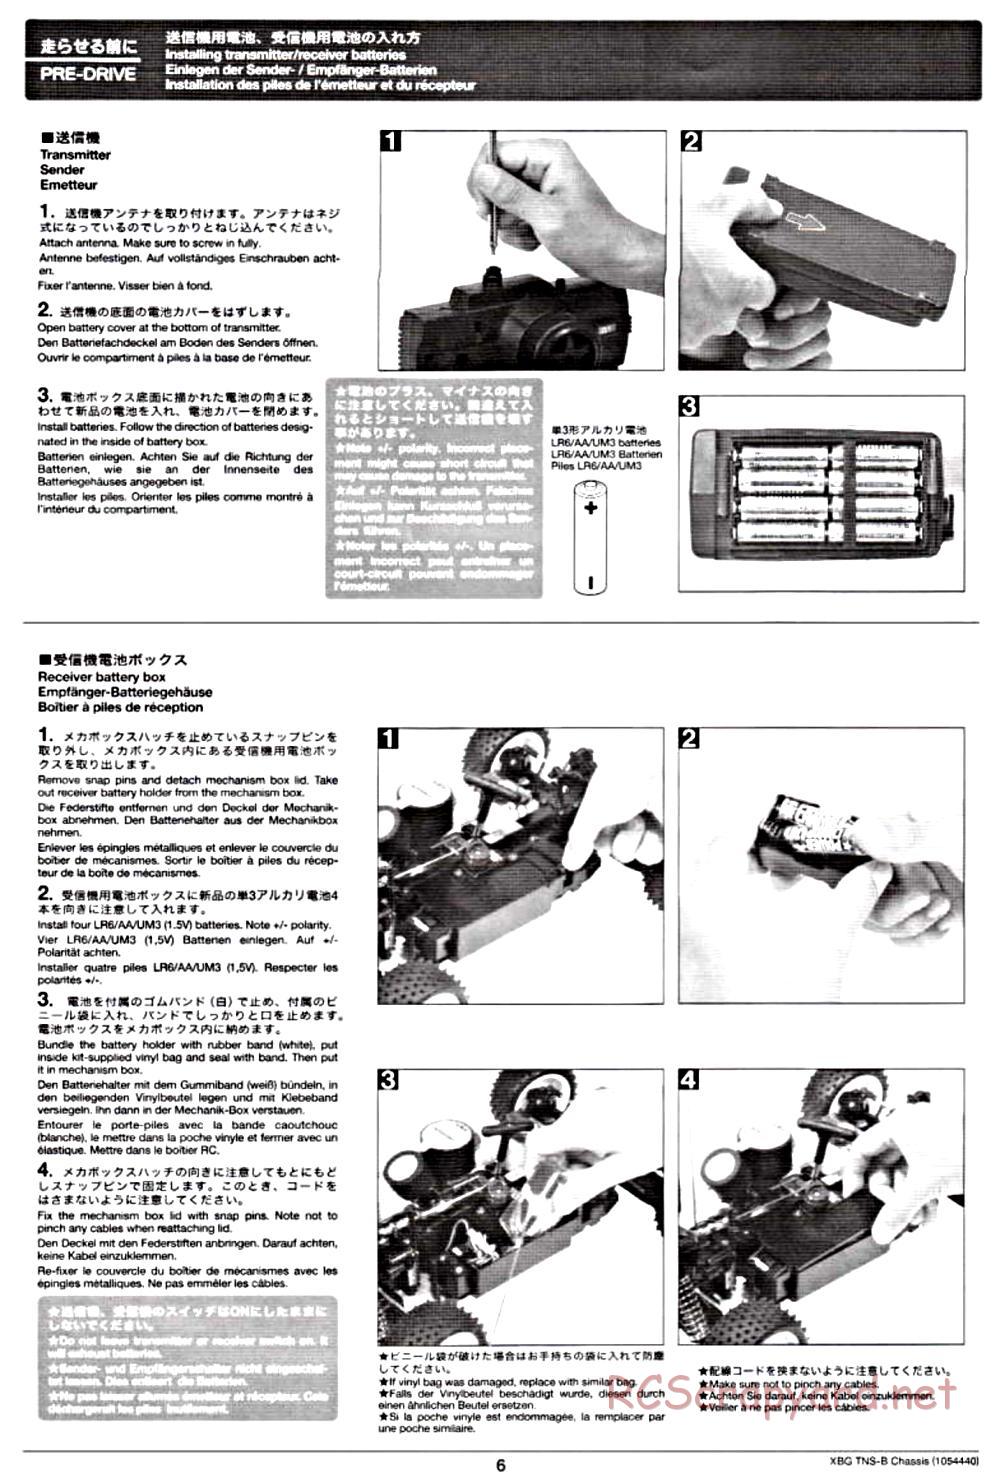 Tamiya - TNS-B Chassis - Manual - Page 6